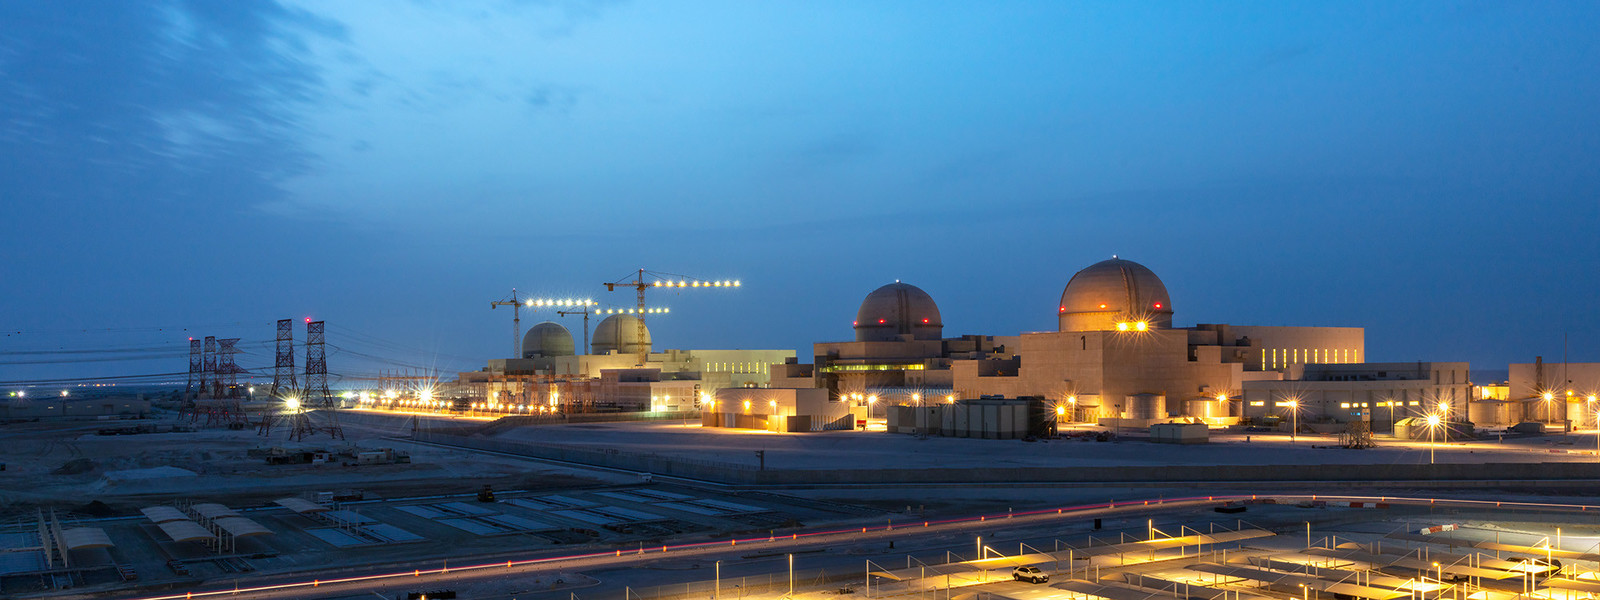 barakah-nuclear-energy-plant-5d35860c66526.jpg (Gallery Image)